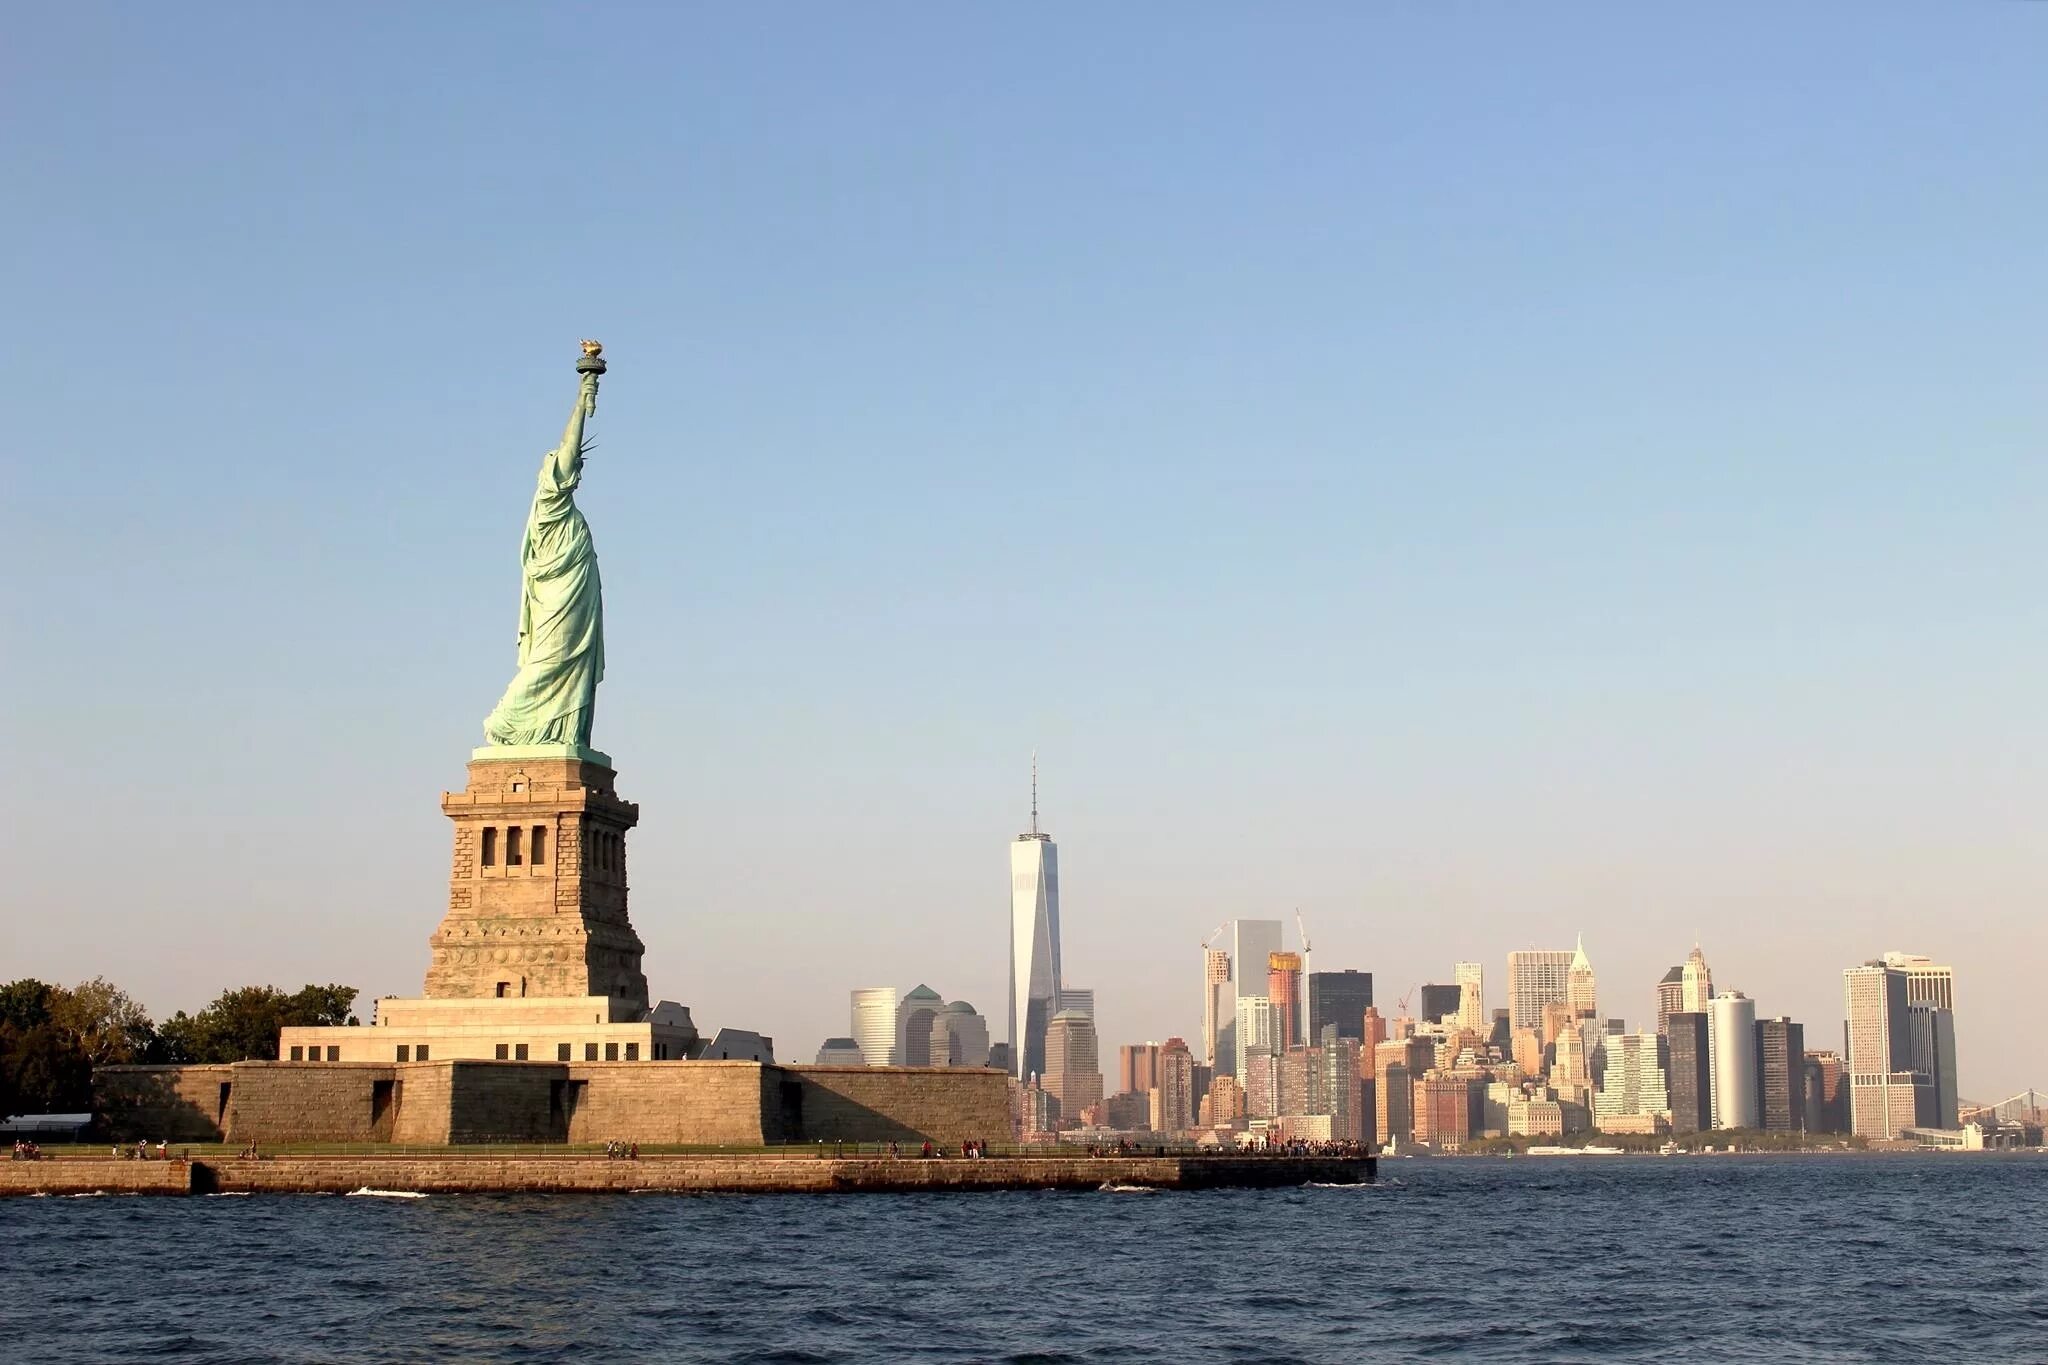 Свобода в различных странах. Статуя свободы Нью-Йорк. Нью Йорк Манхеттен статуя свободы. Нью-Йорк бстатуясвободы. НЬЮЙ РРК статуя свободы.